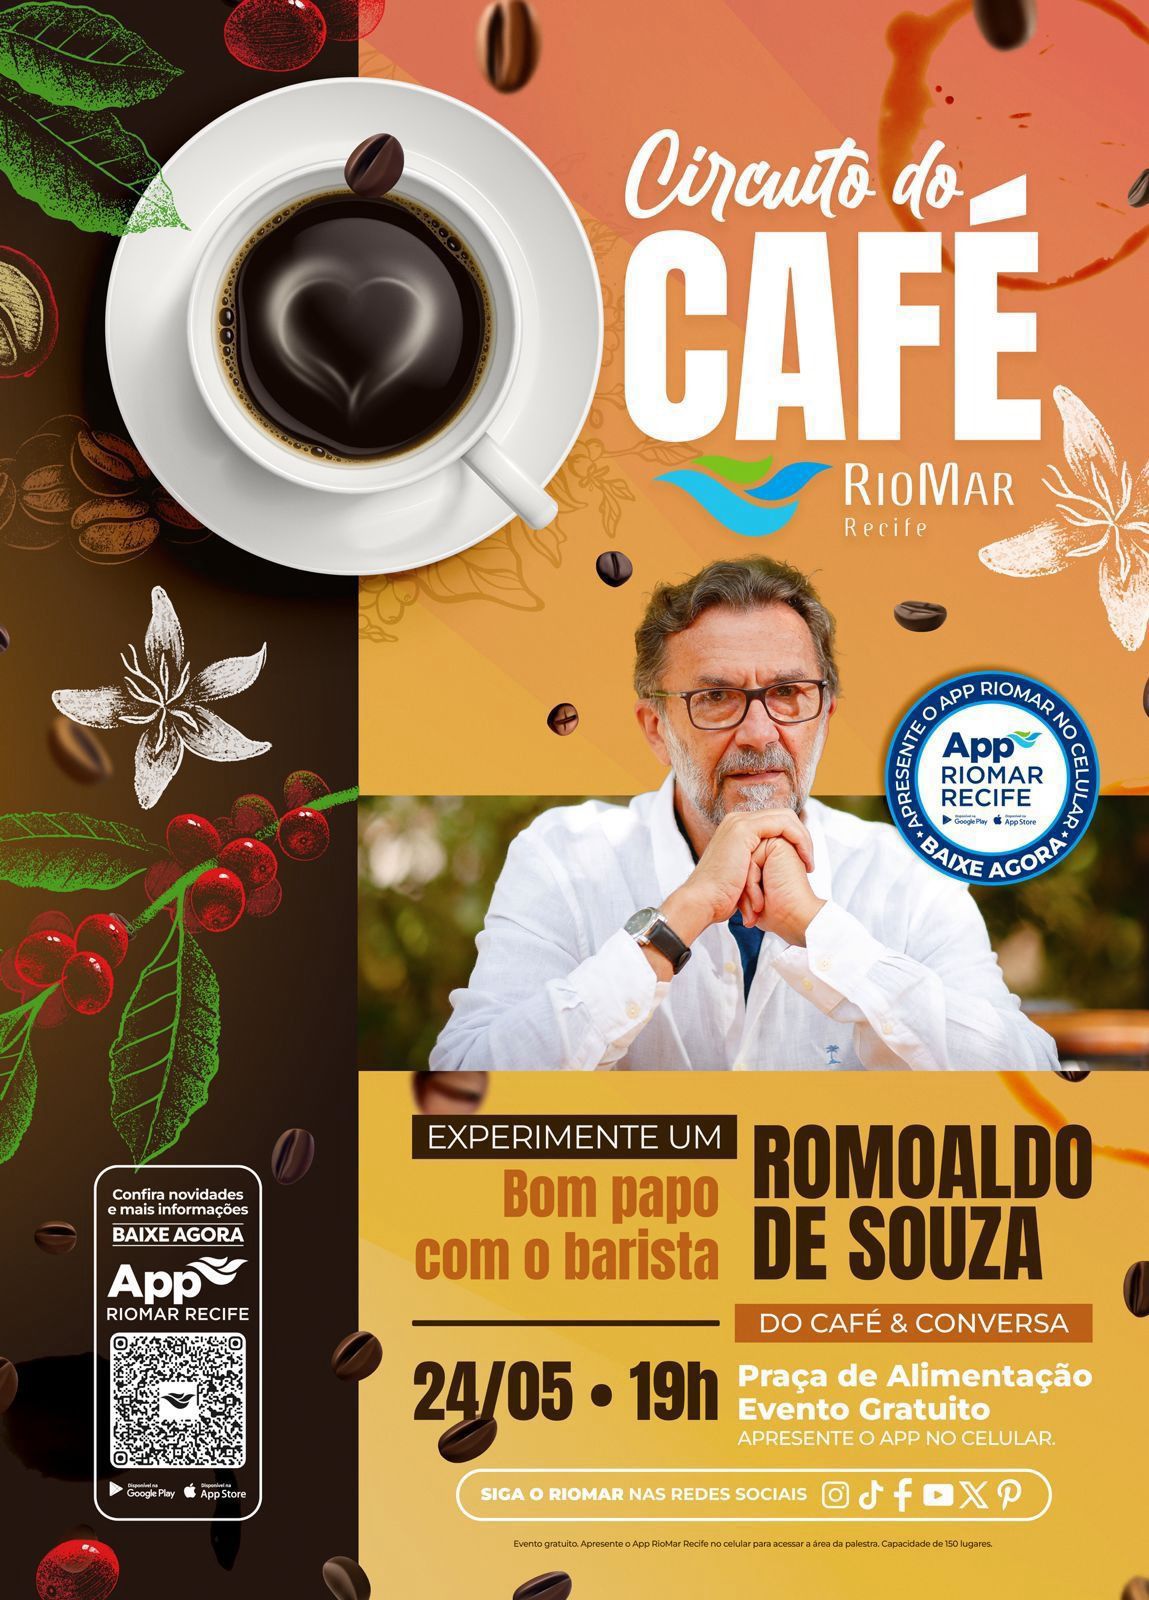 Recife recebe 7ª Edição do Circuito do Café RIOMAR